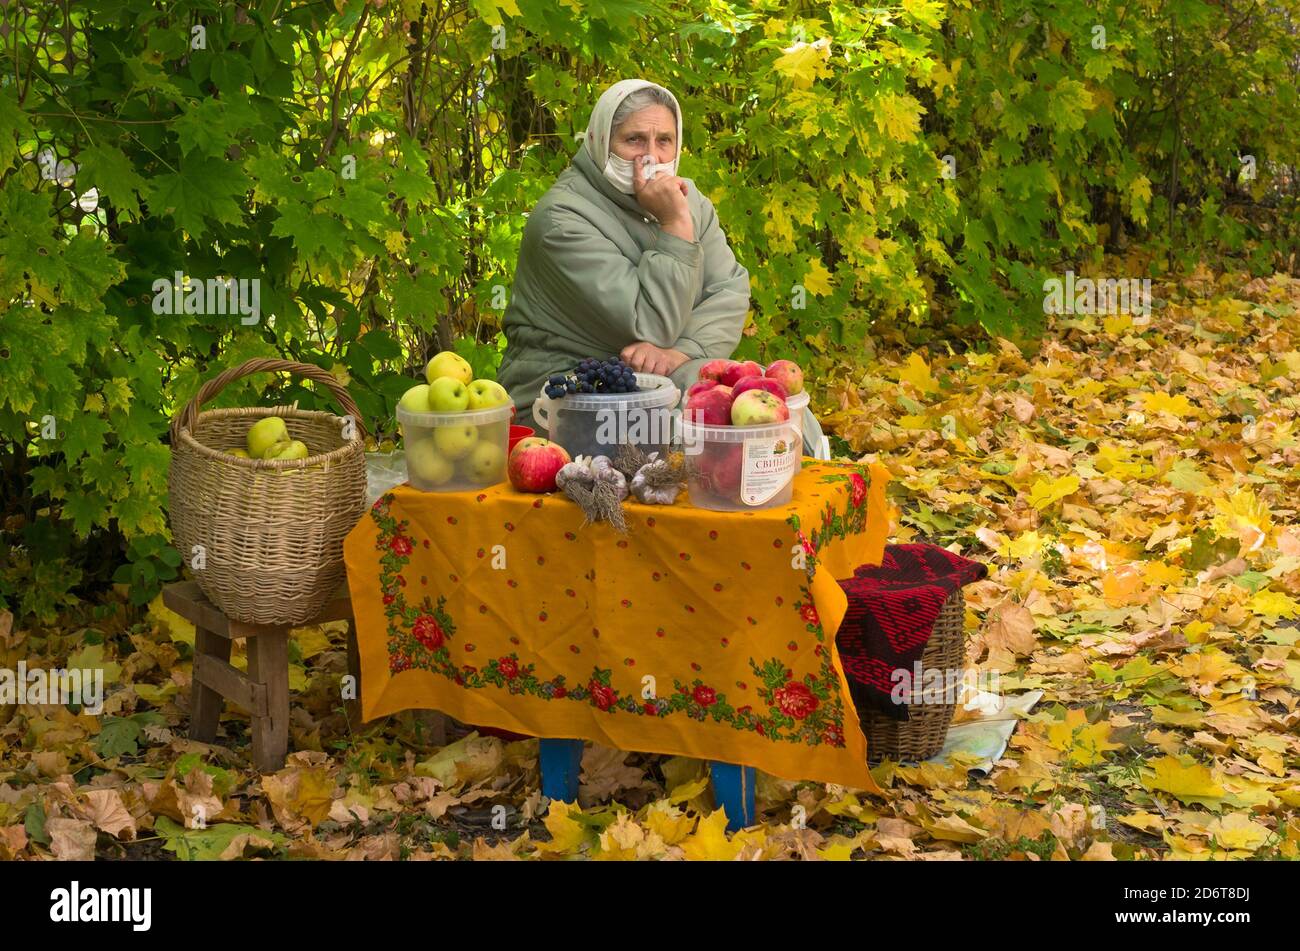 KONSTANTINOVO, RYAZANSKAYA OBLAST', RUSSIE - 03 OCTOBRE 2020 : le babushka russe portant un masque vend des pommes, du raisin et de l'ail de son jardin. Banque D'Images